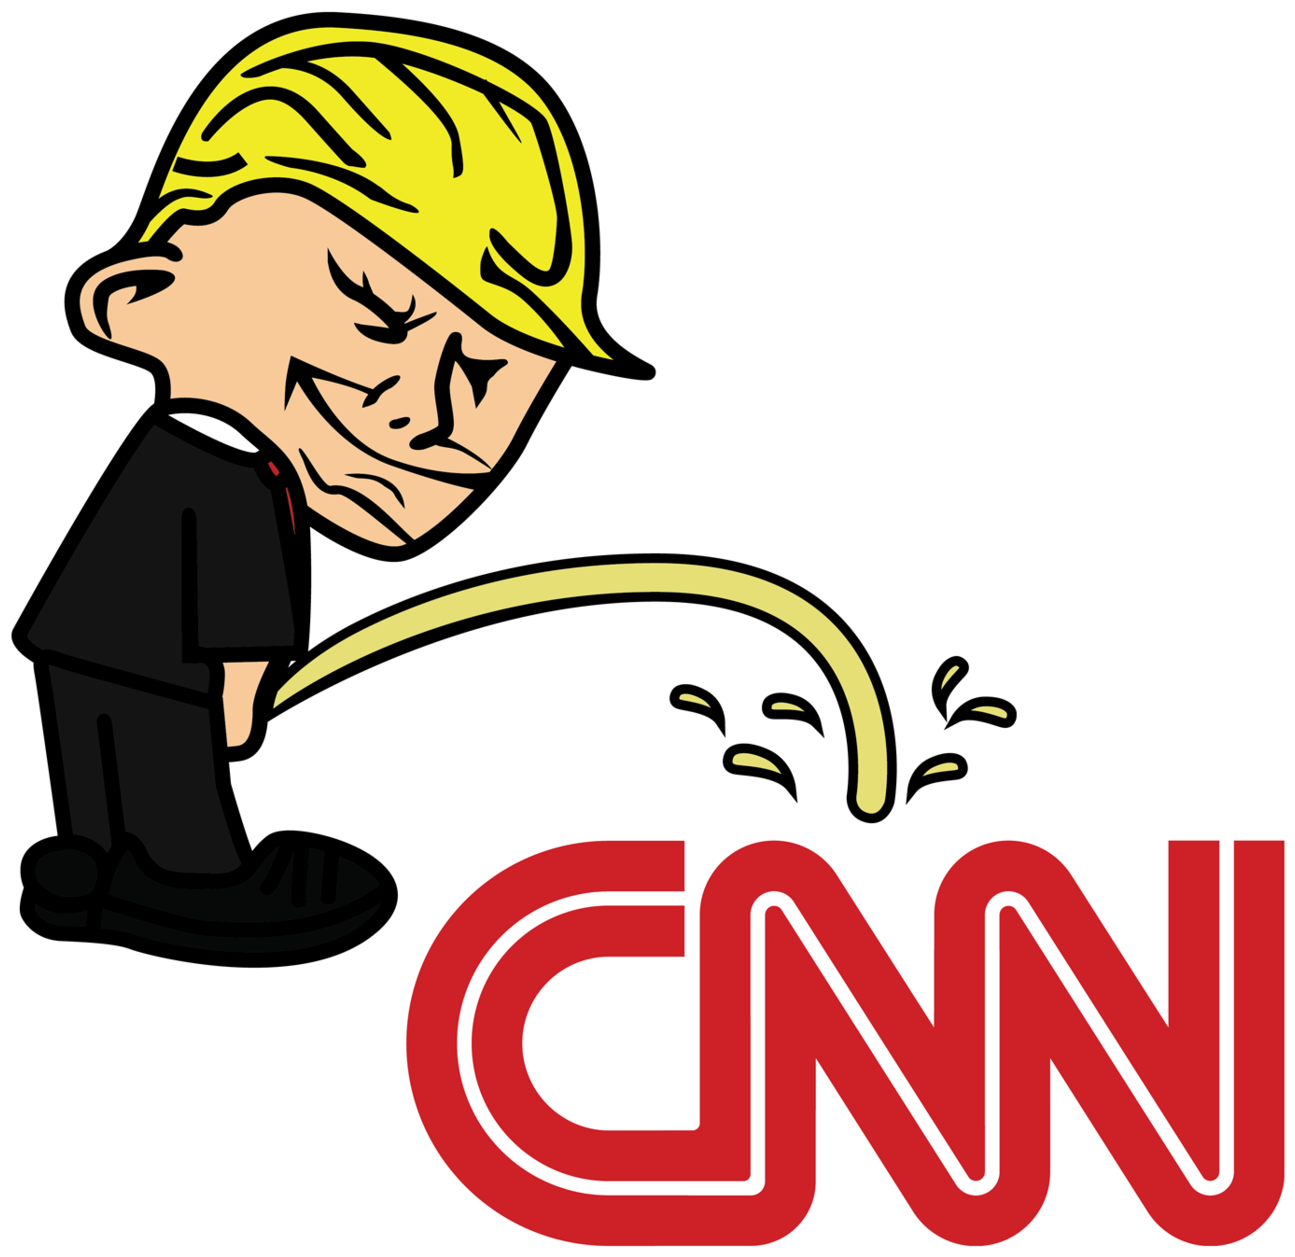 Pi$$ing Trump Badboy Cnn Clear Sticker - Trump Bad Boy Stickers (1400x1400)